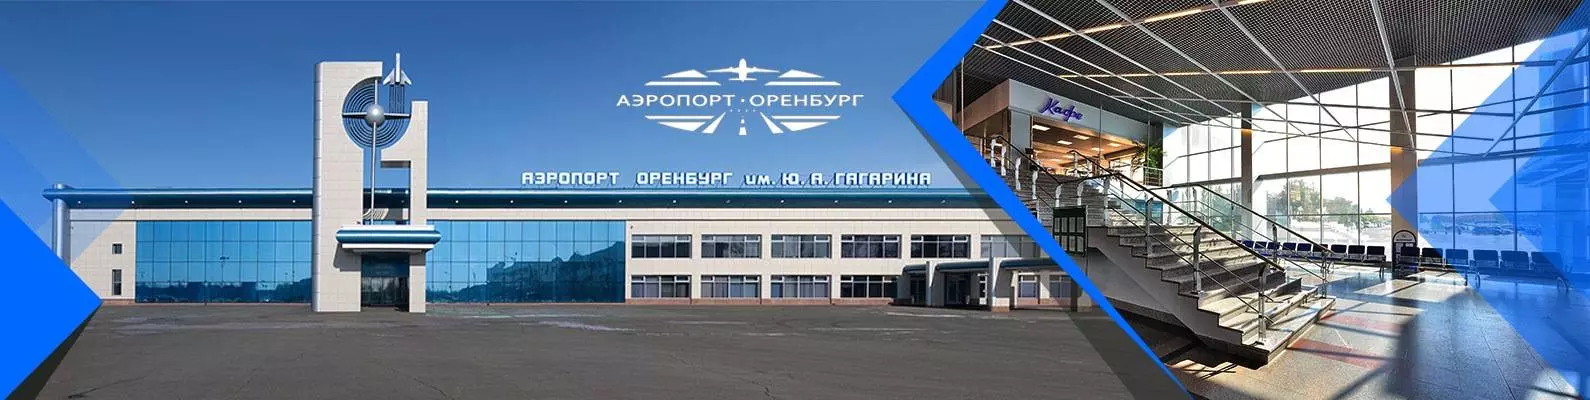 Расписание вылетов и прилетов в аэропорту оренбурга | авиакомпании и авиалинии россии и мира